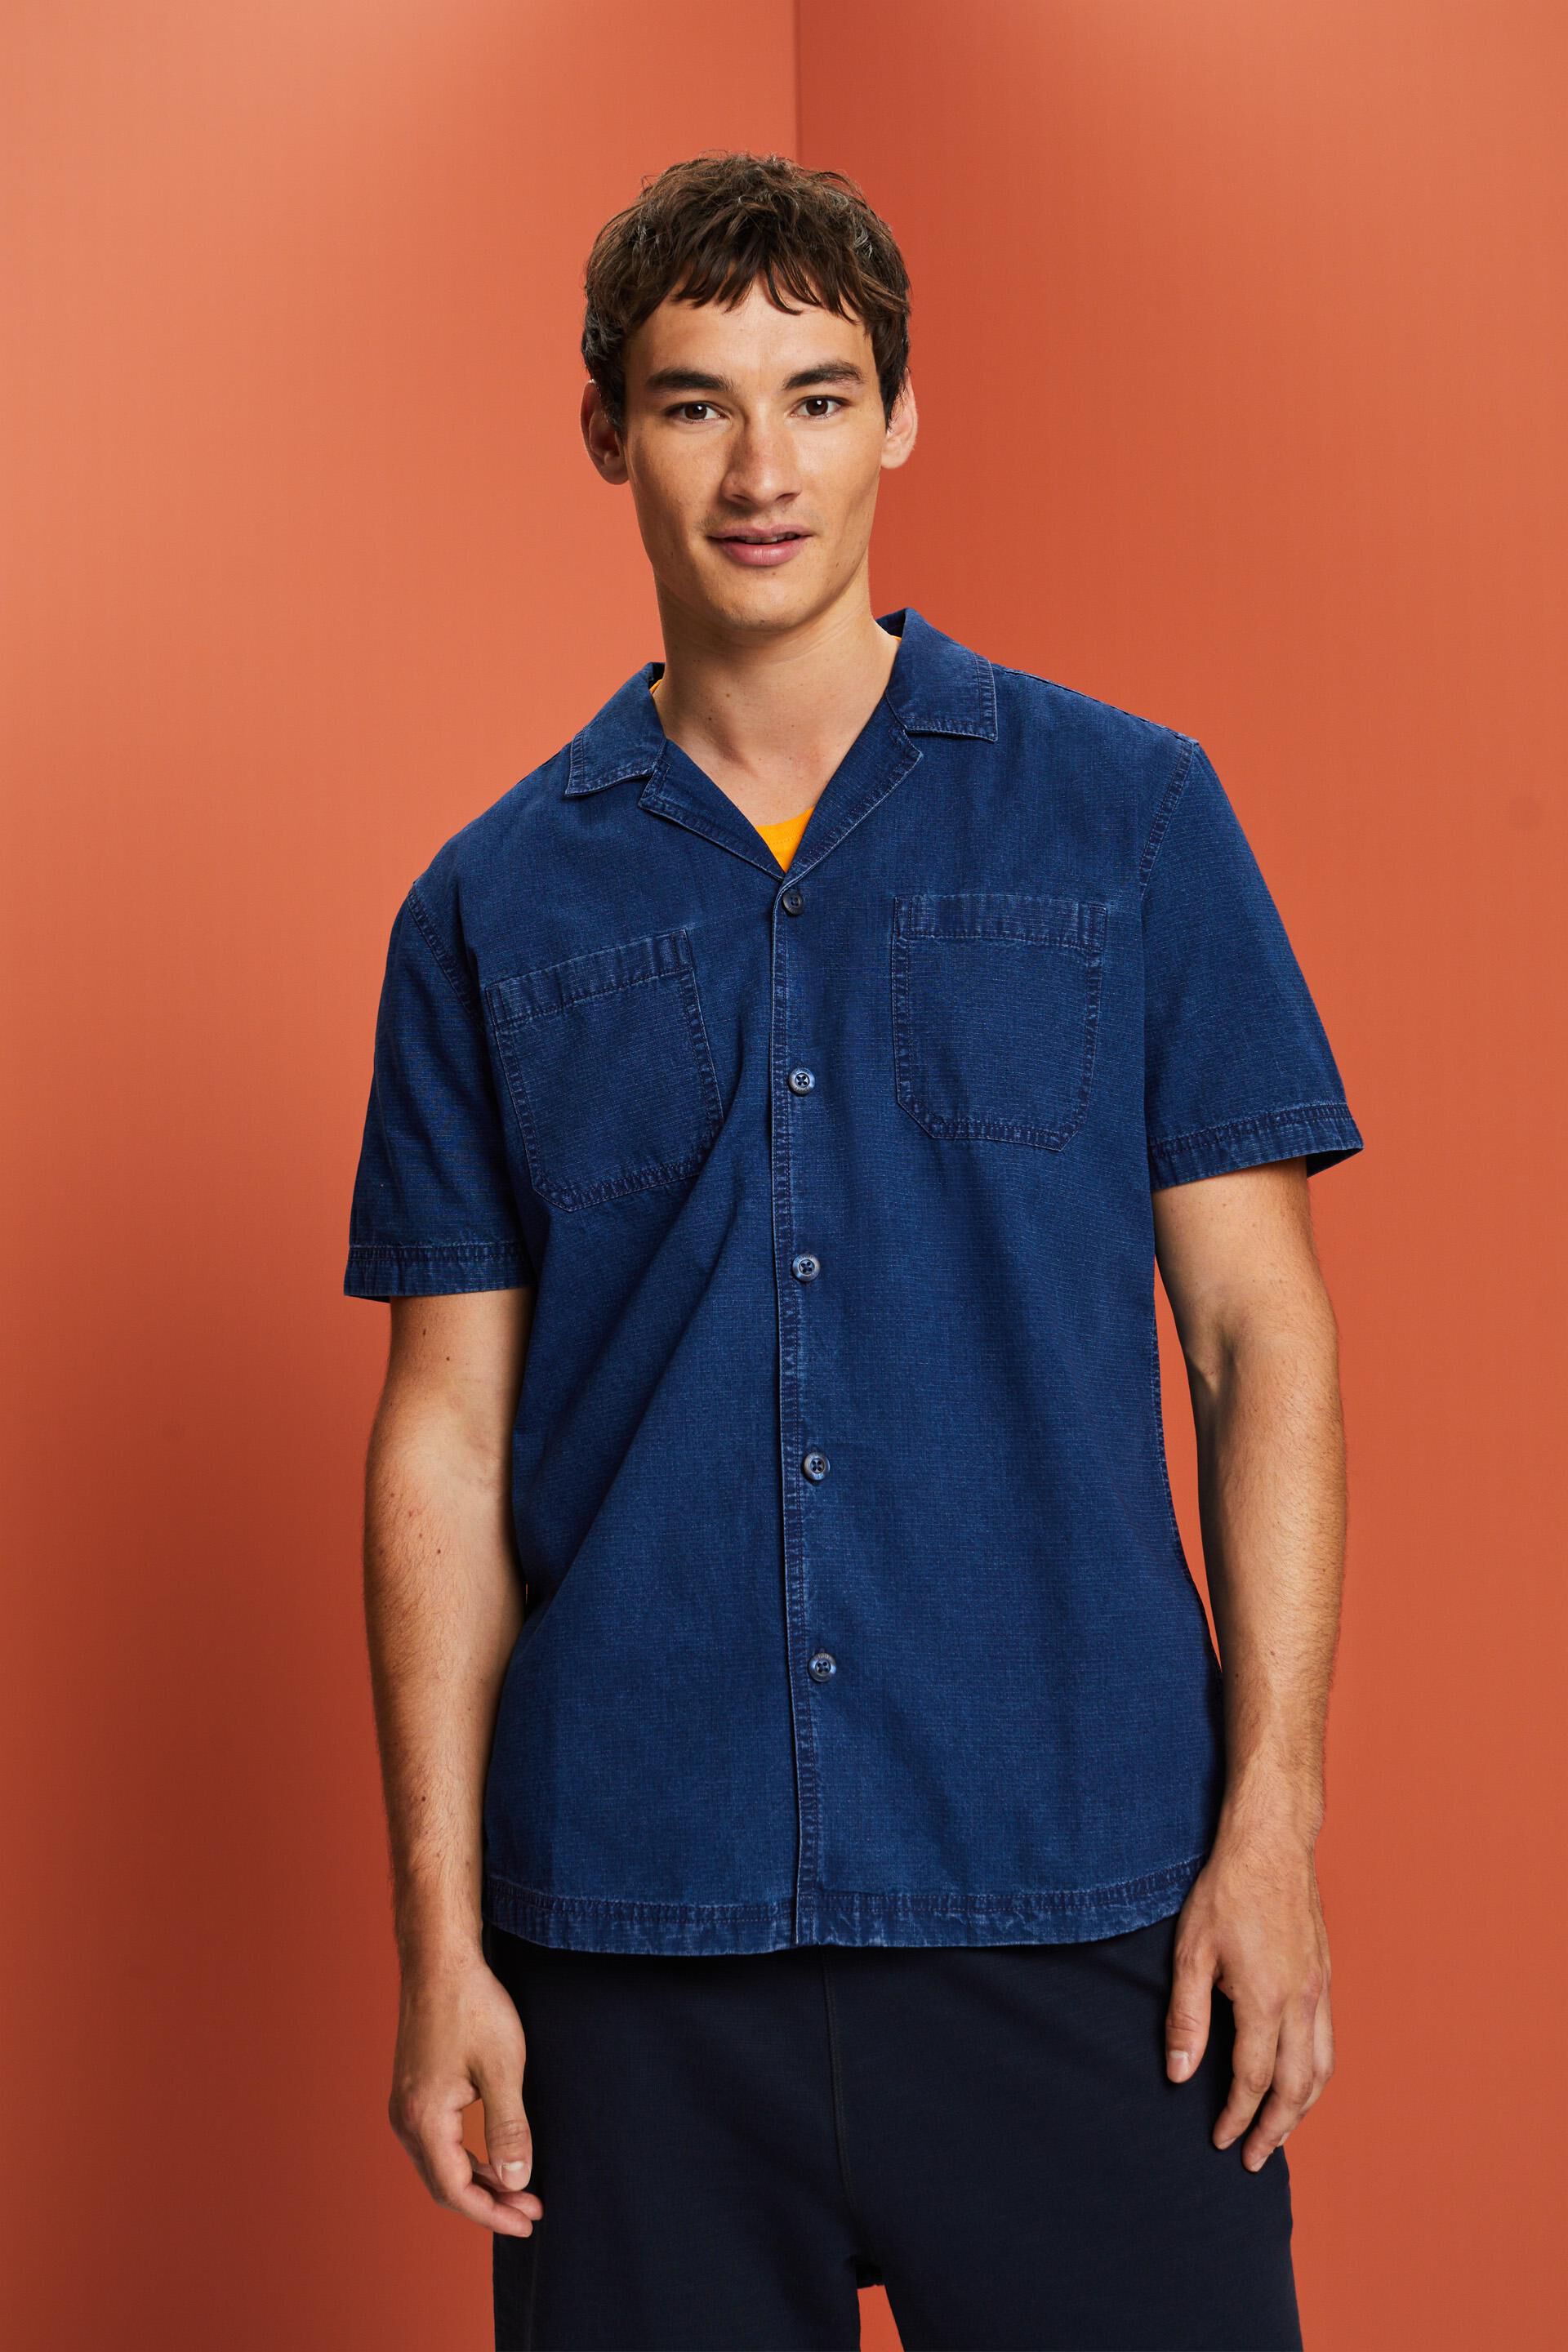 Esprit jeans Short shirt, cotton sleeve 100%